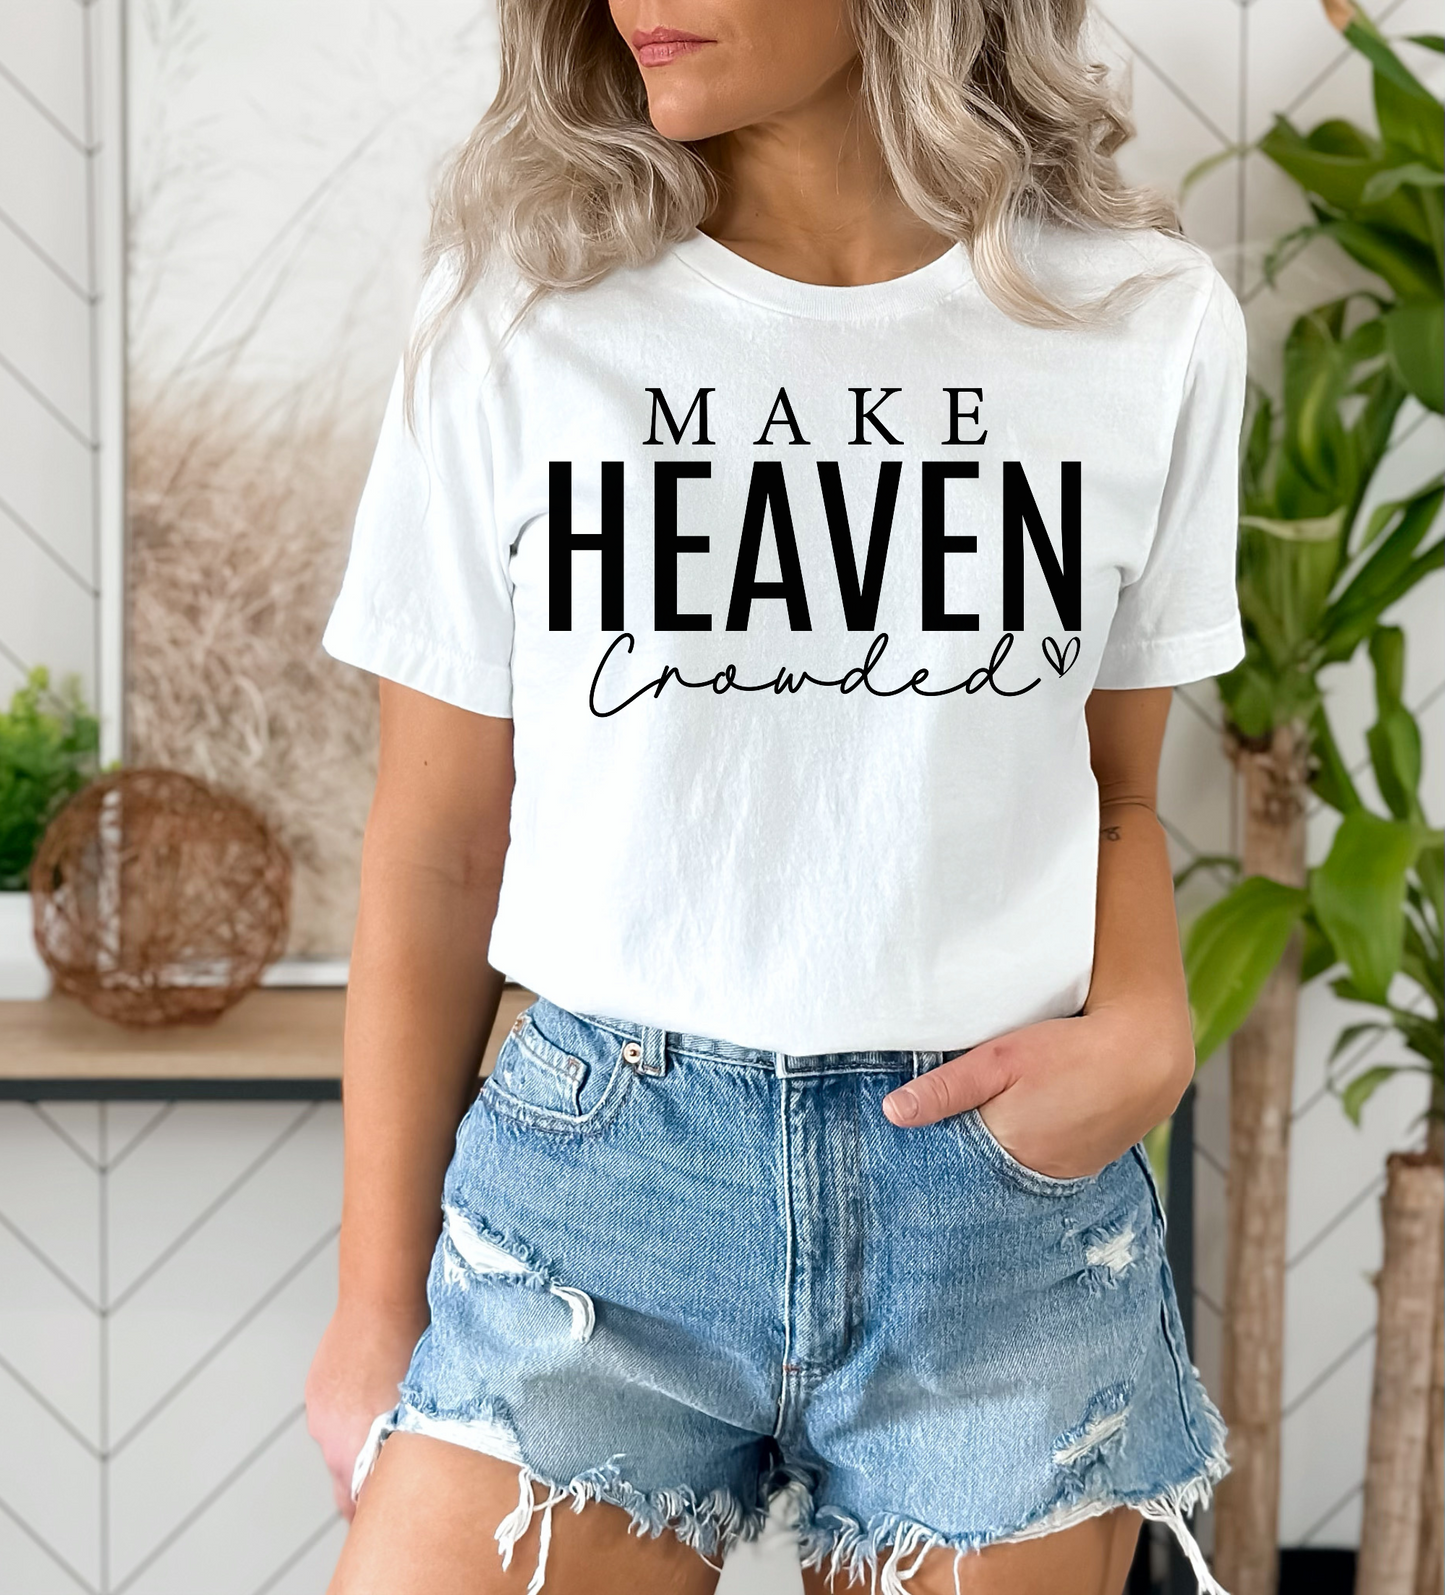 Make Heaven Crowded Screen Print Transfer